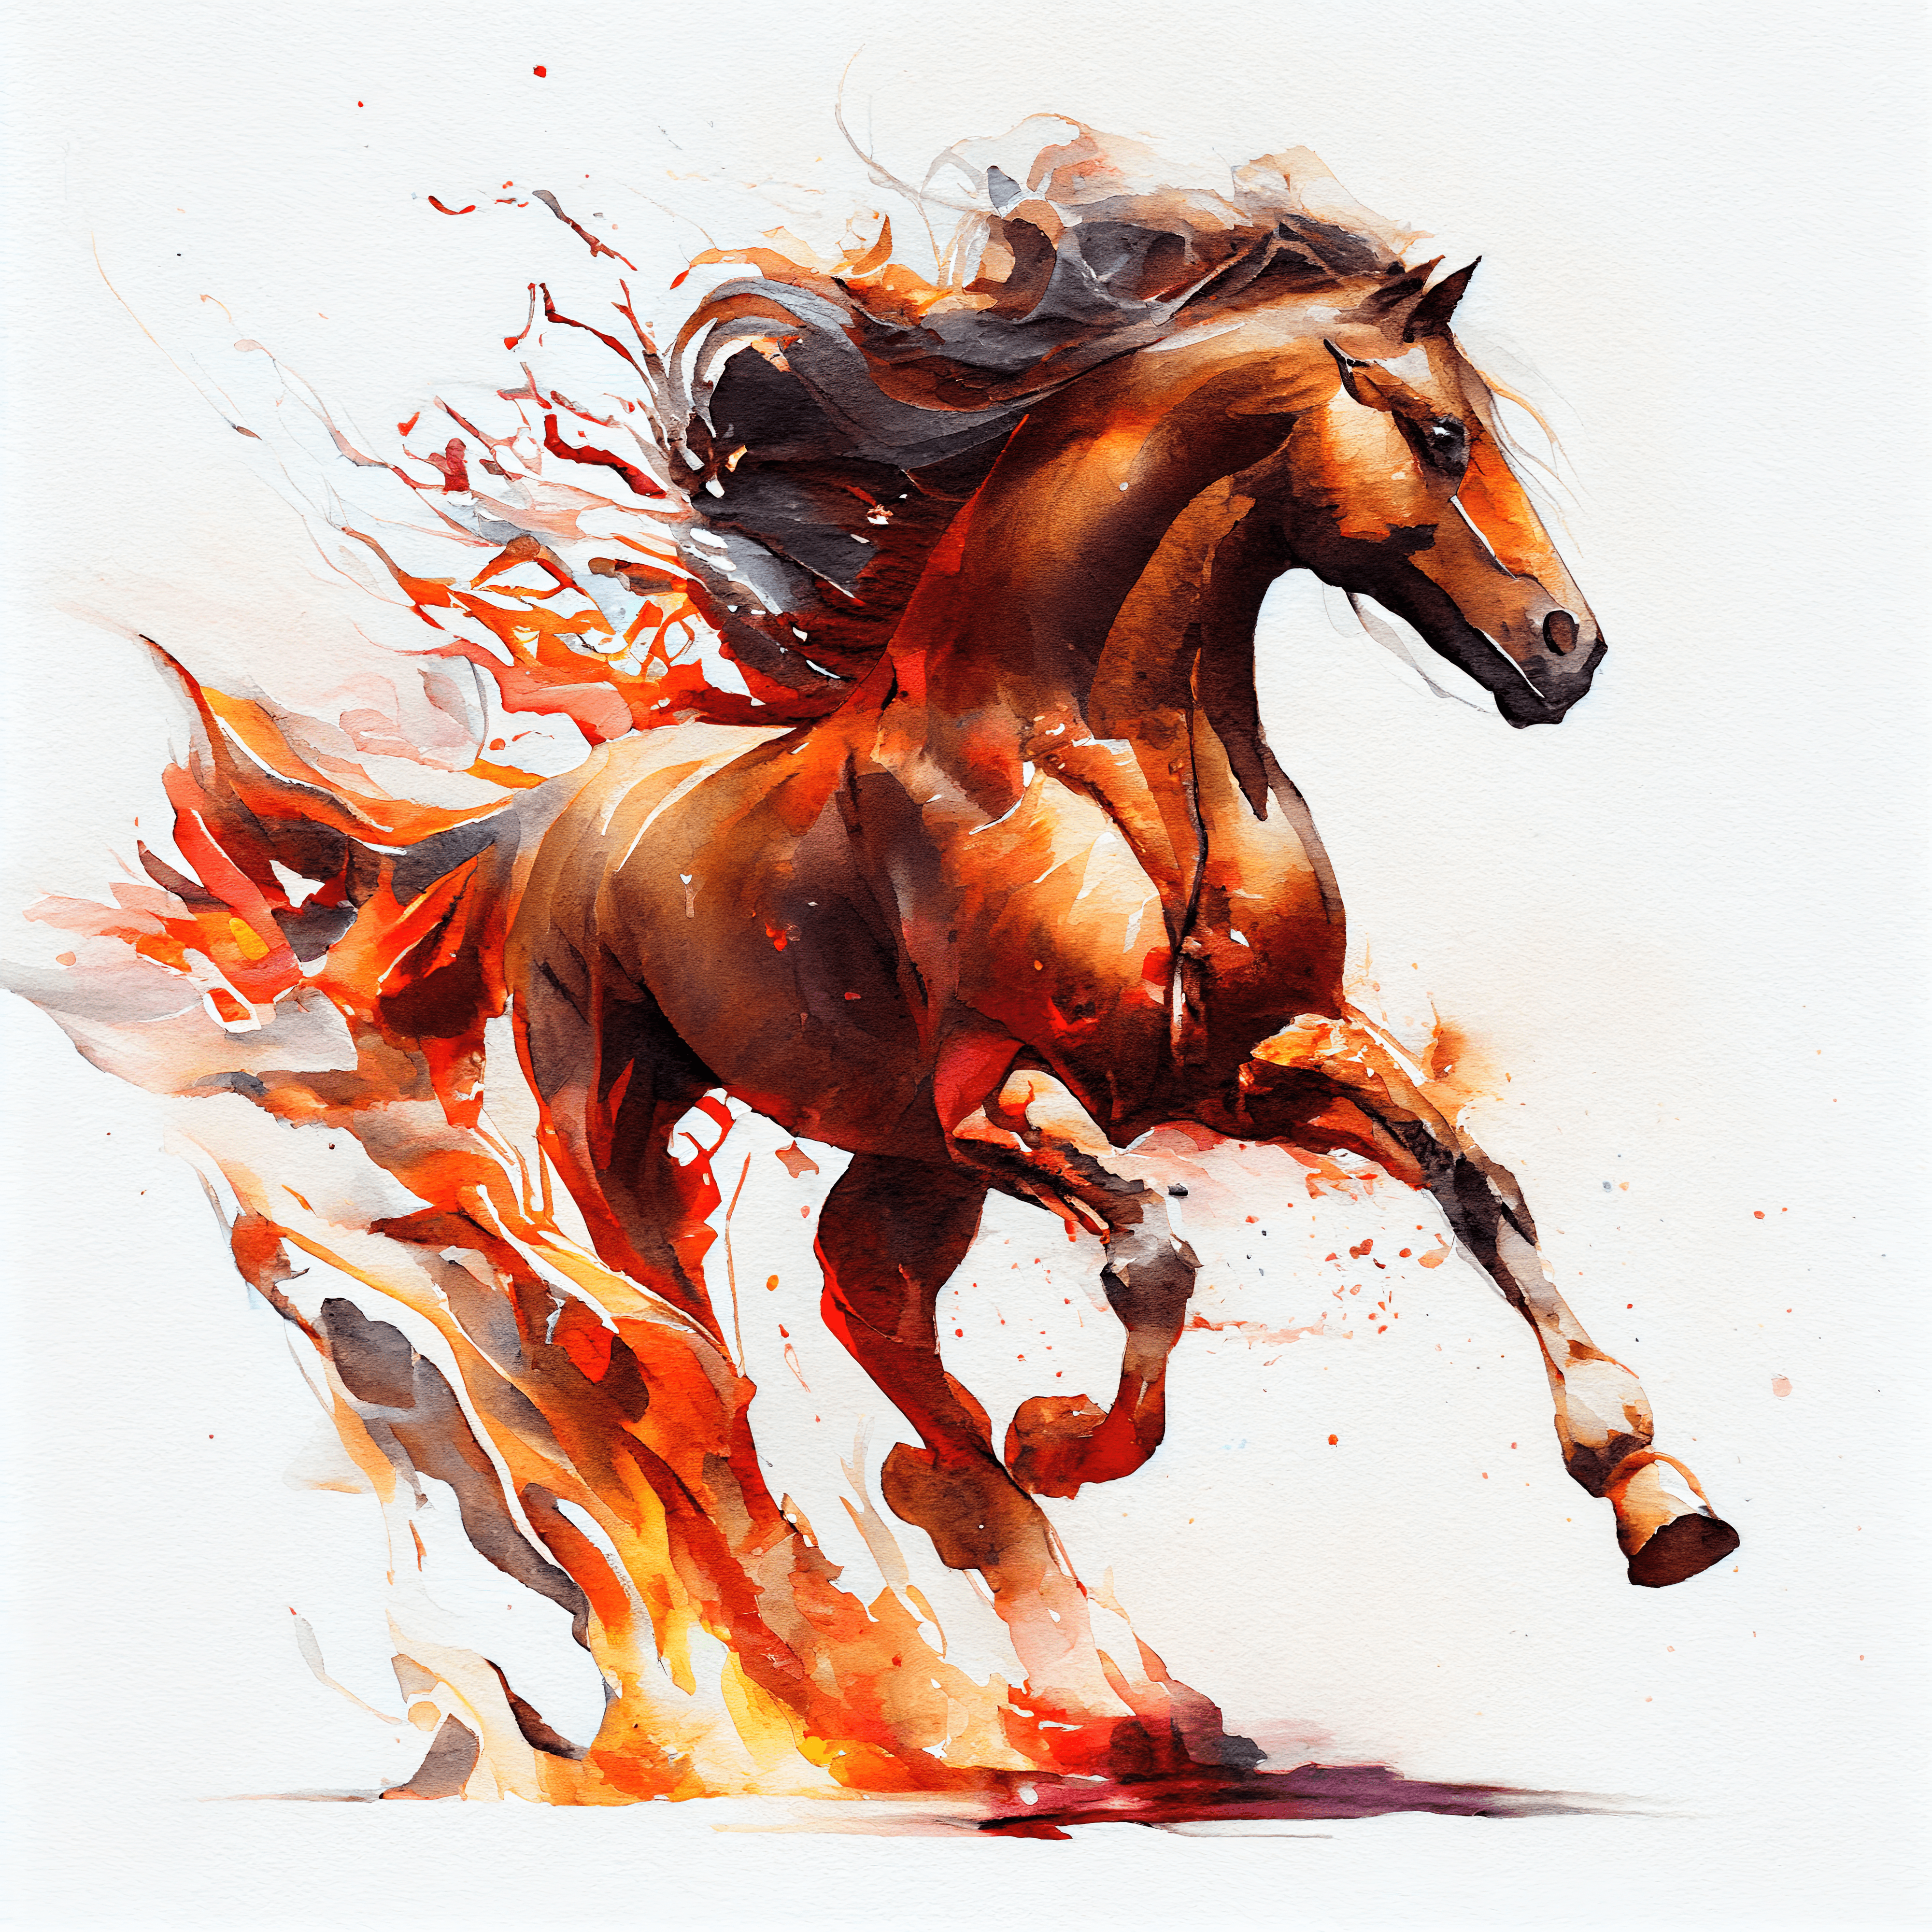 Horse running through flames